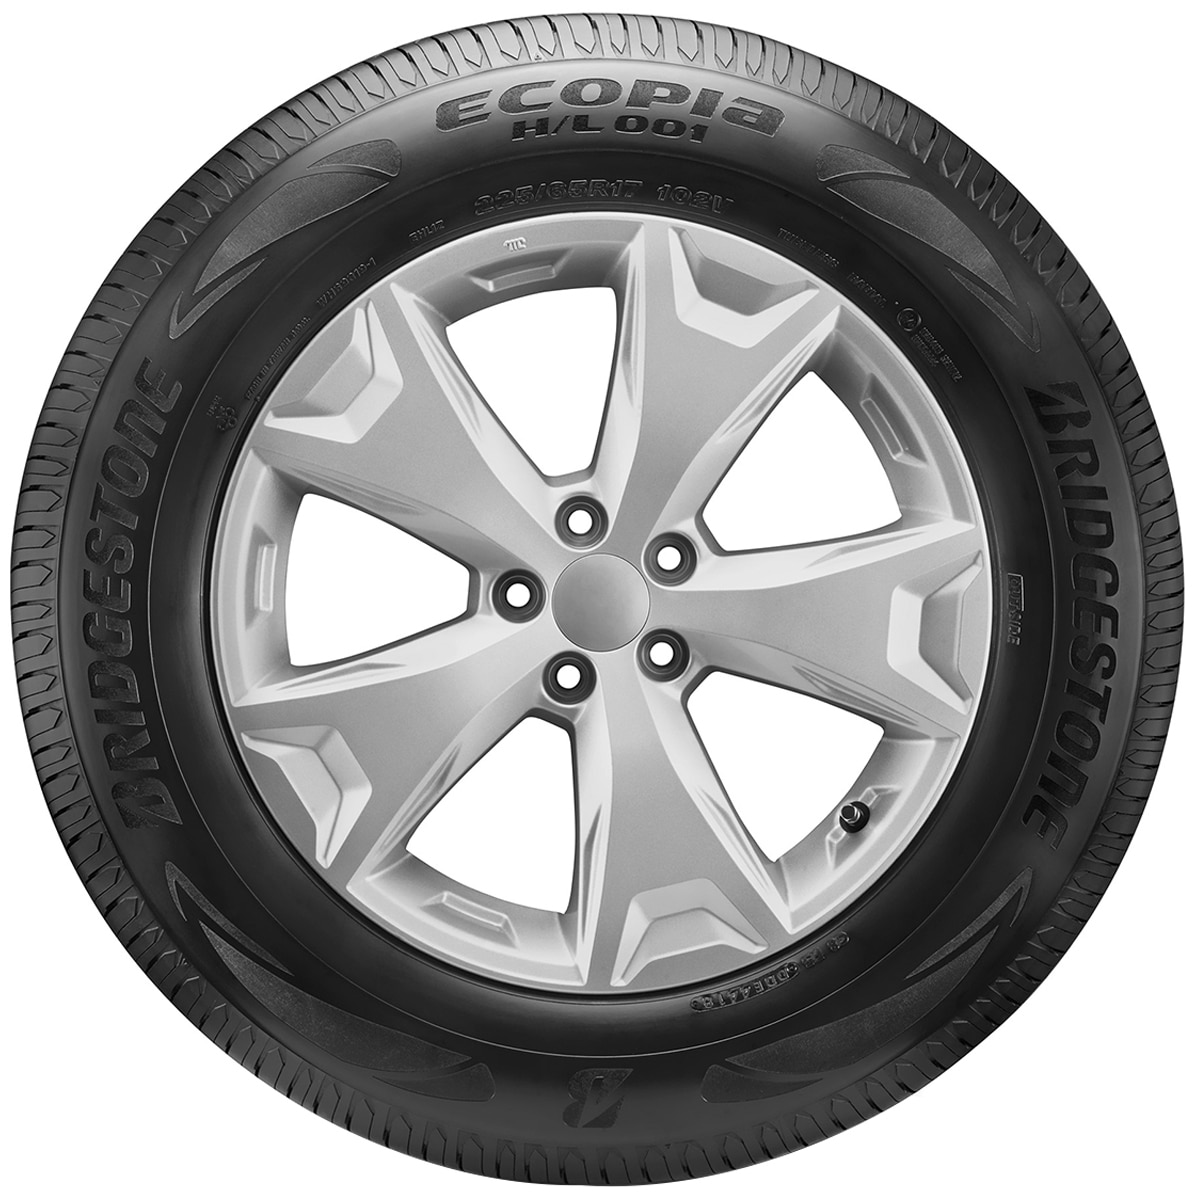 225/60R17 99V BS HL001 - Tyre